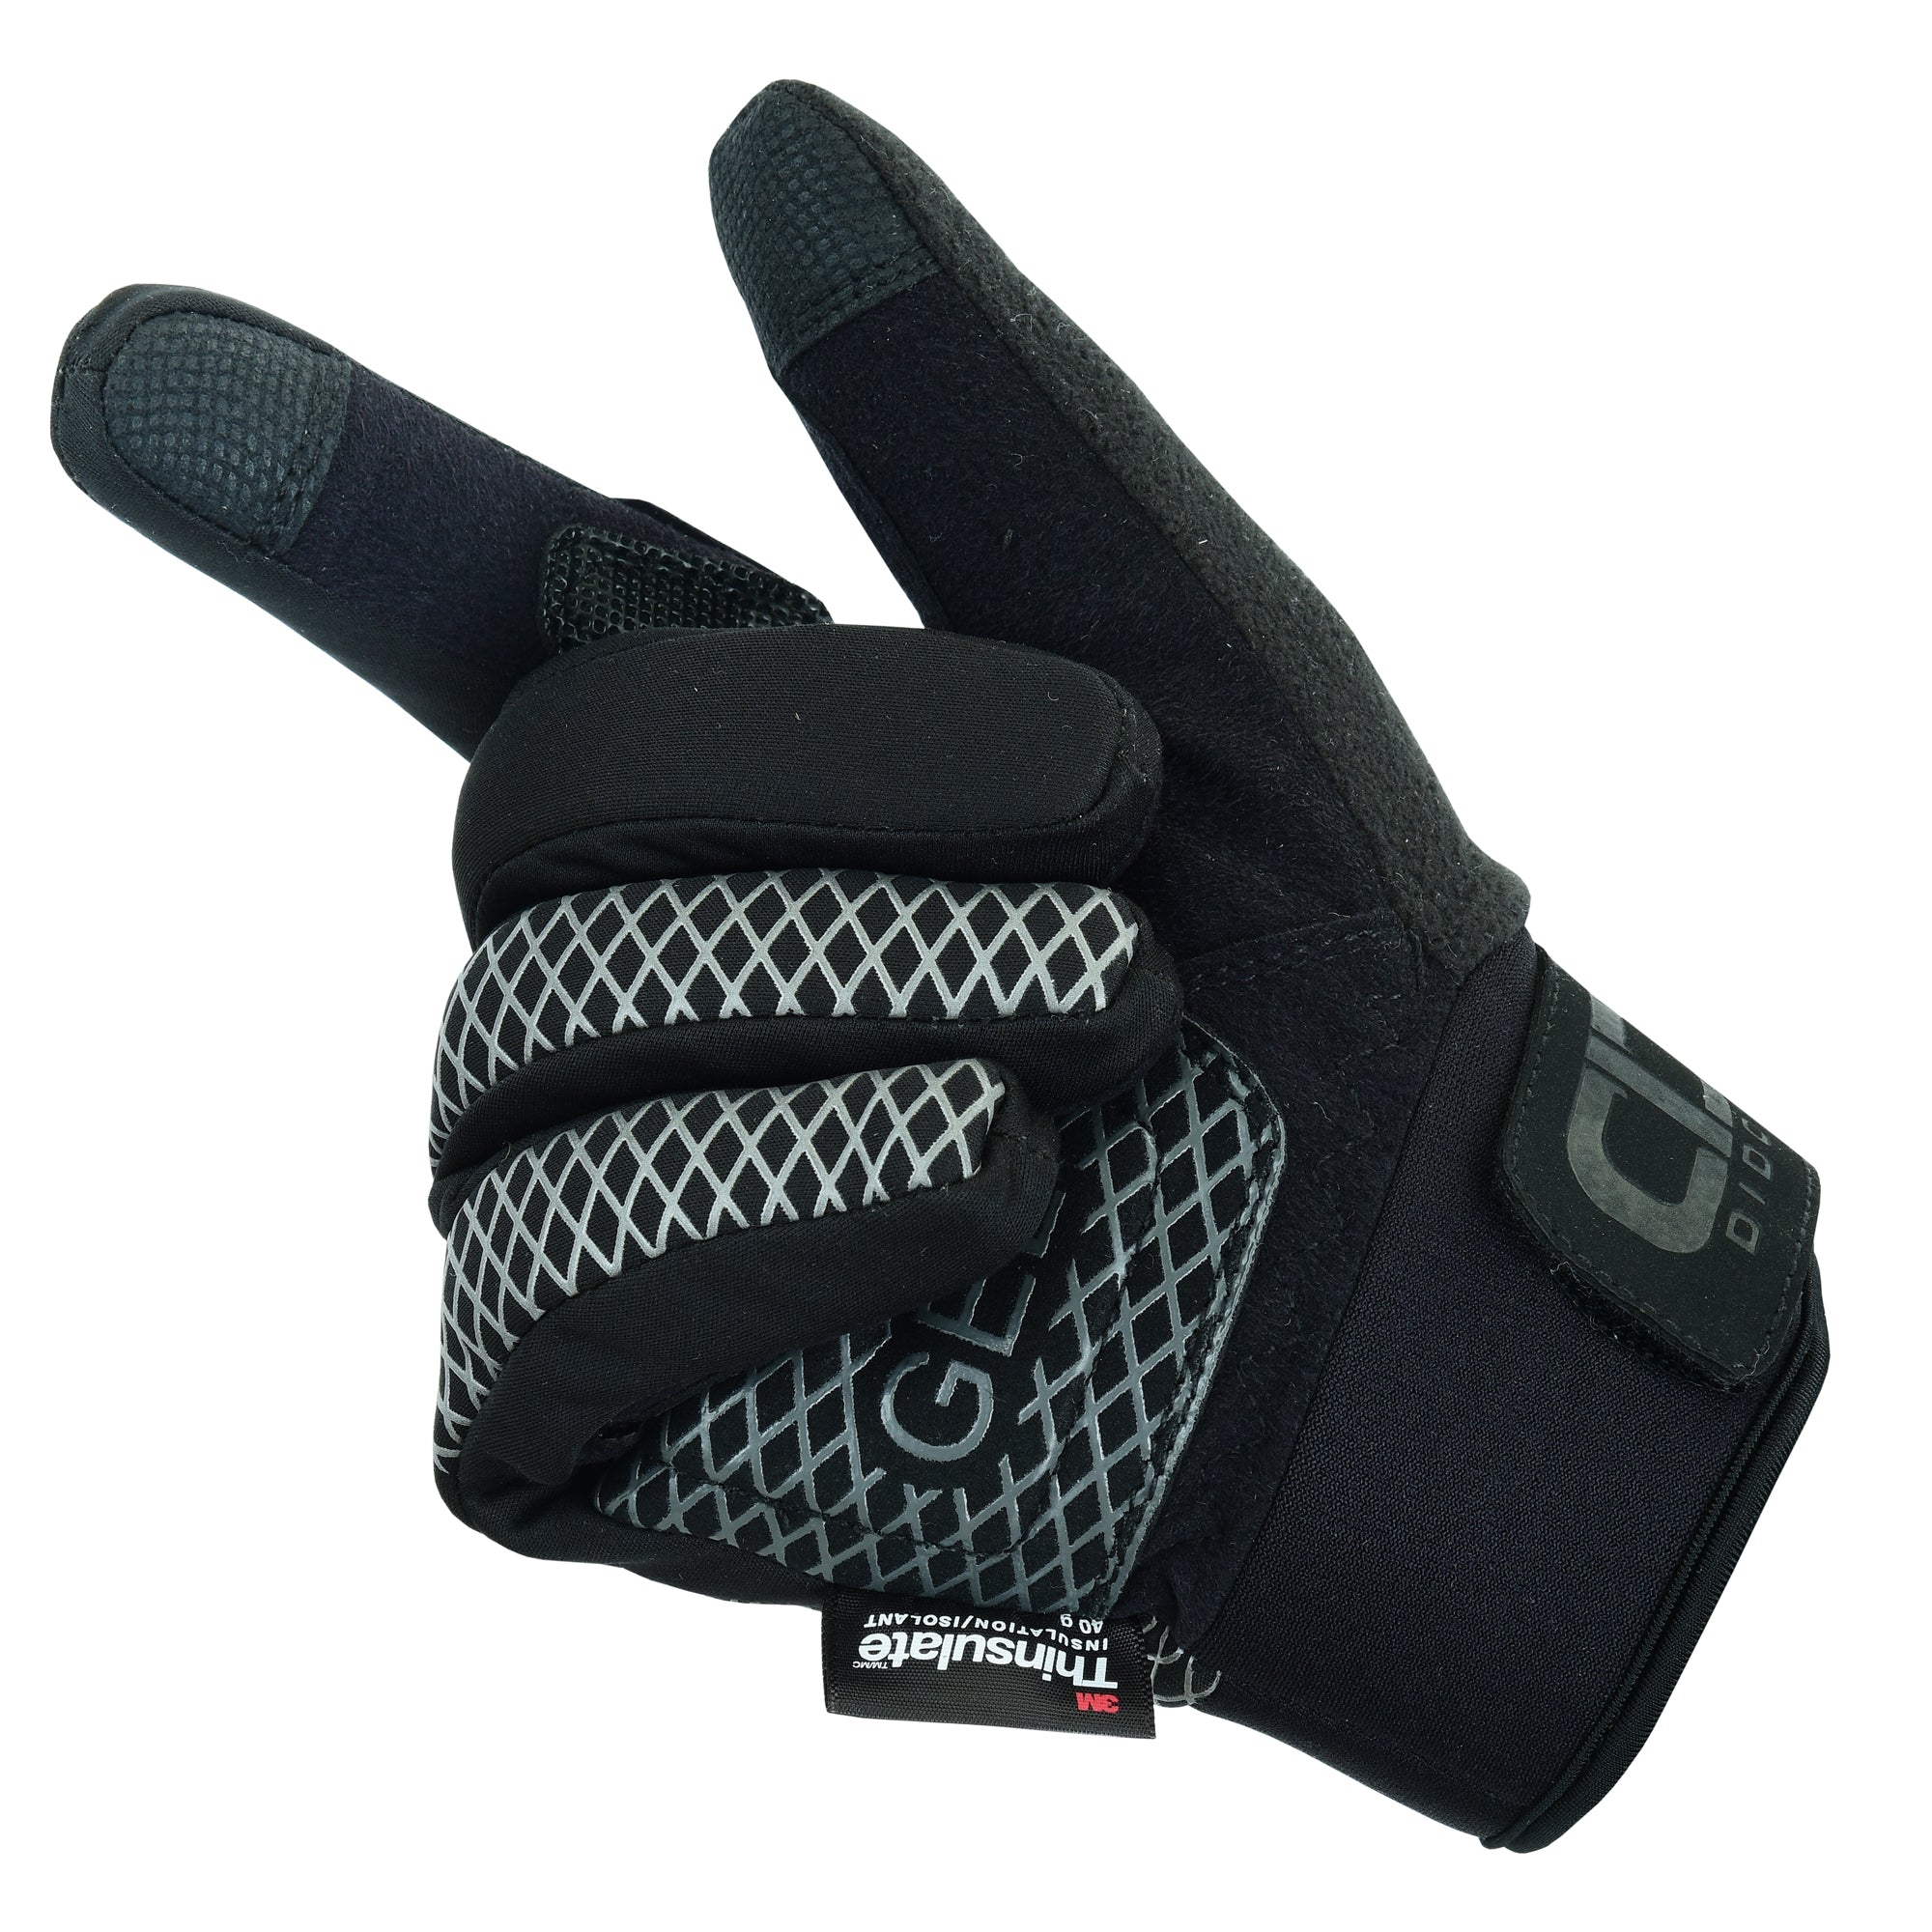 Men's Pro Waterproof & Wind Resistant Winter Cycling Gloves Black